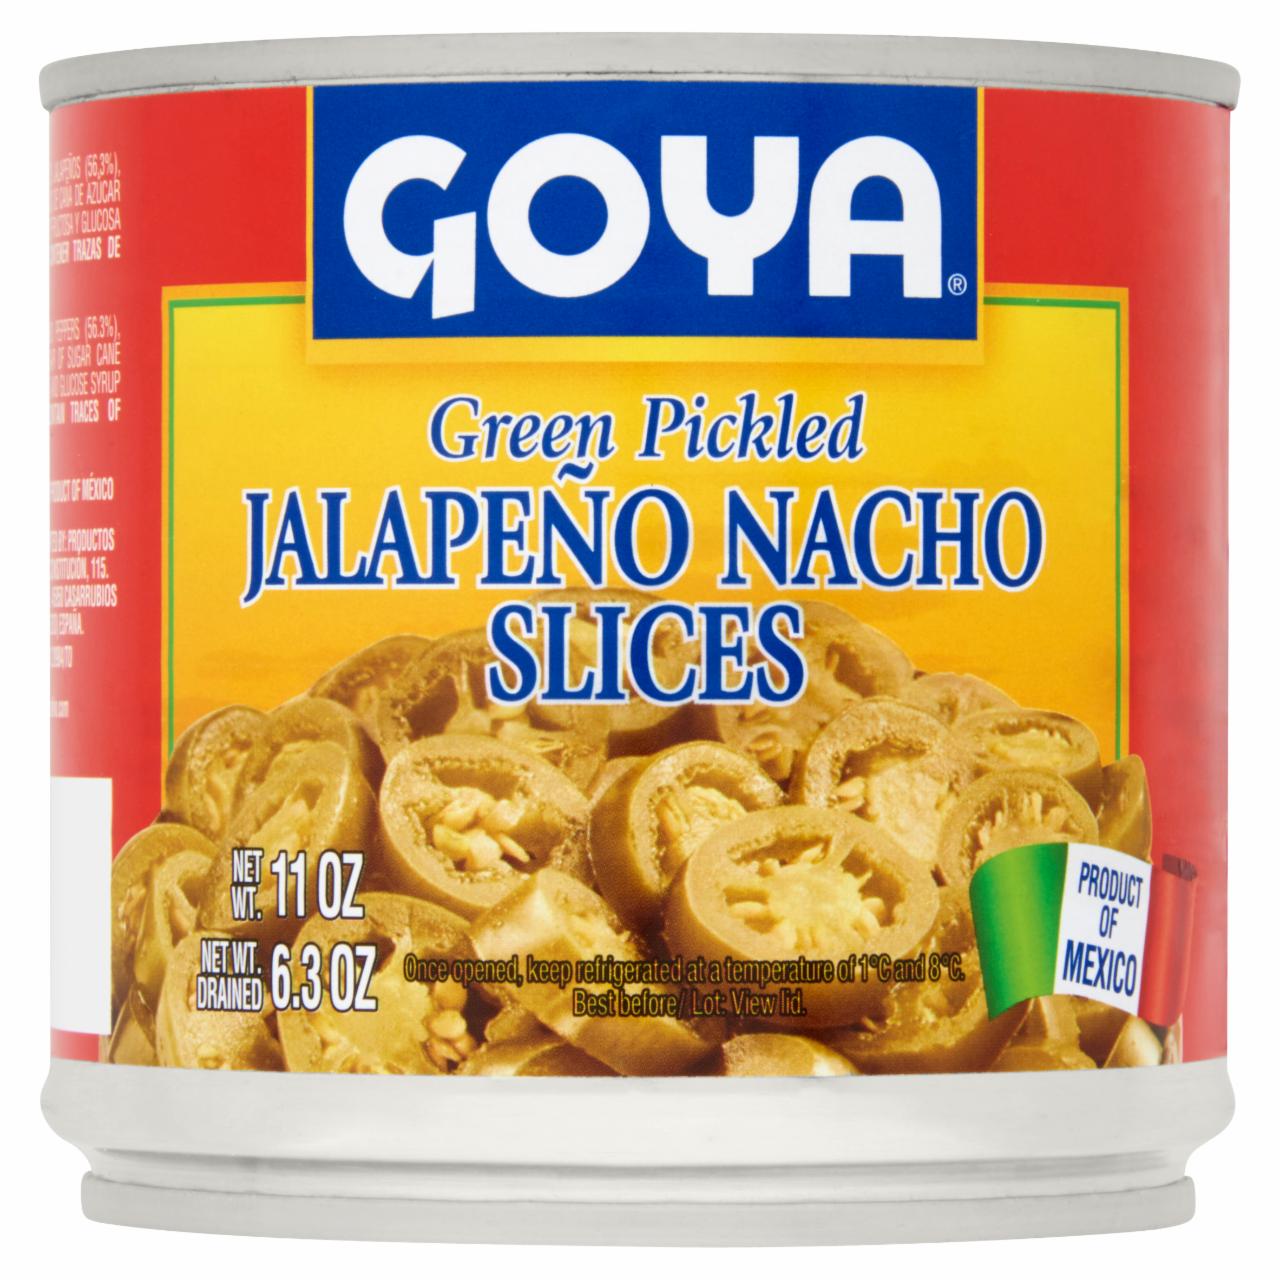 Képek - Goya szeletelt jalapeno chili paprika páclében 312 g